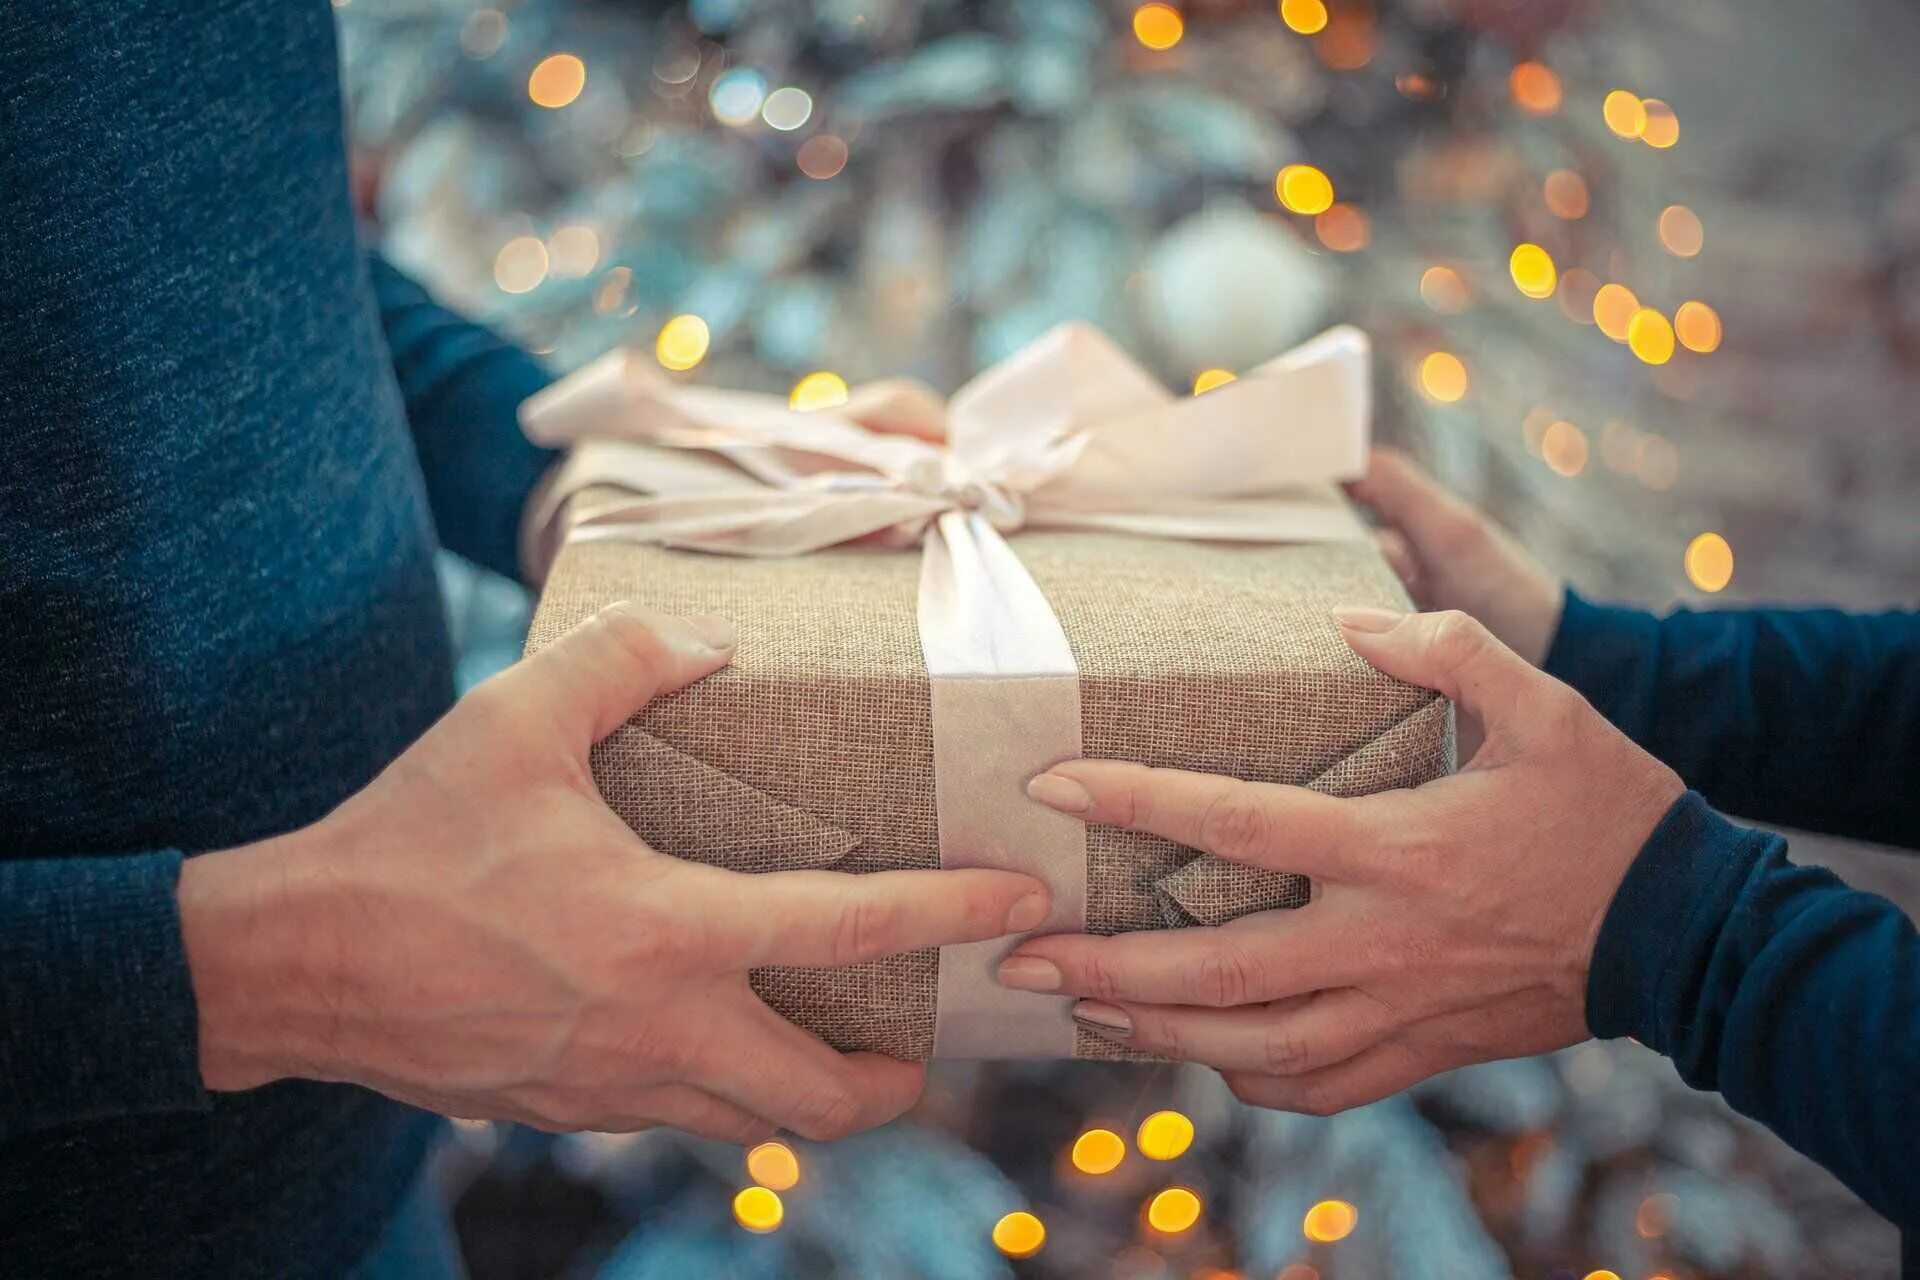 Правда дарит подарки. Подарок в руках. Дарим подарки. Подорки в руках. Человек дарит подарок другому.